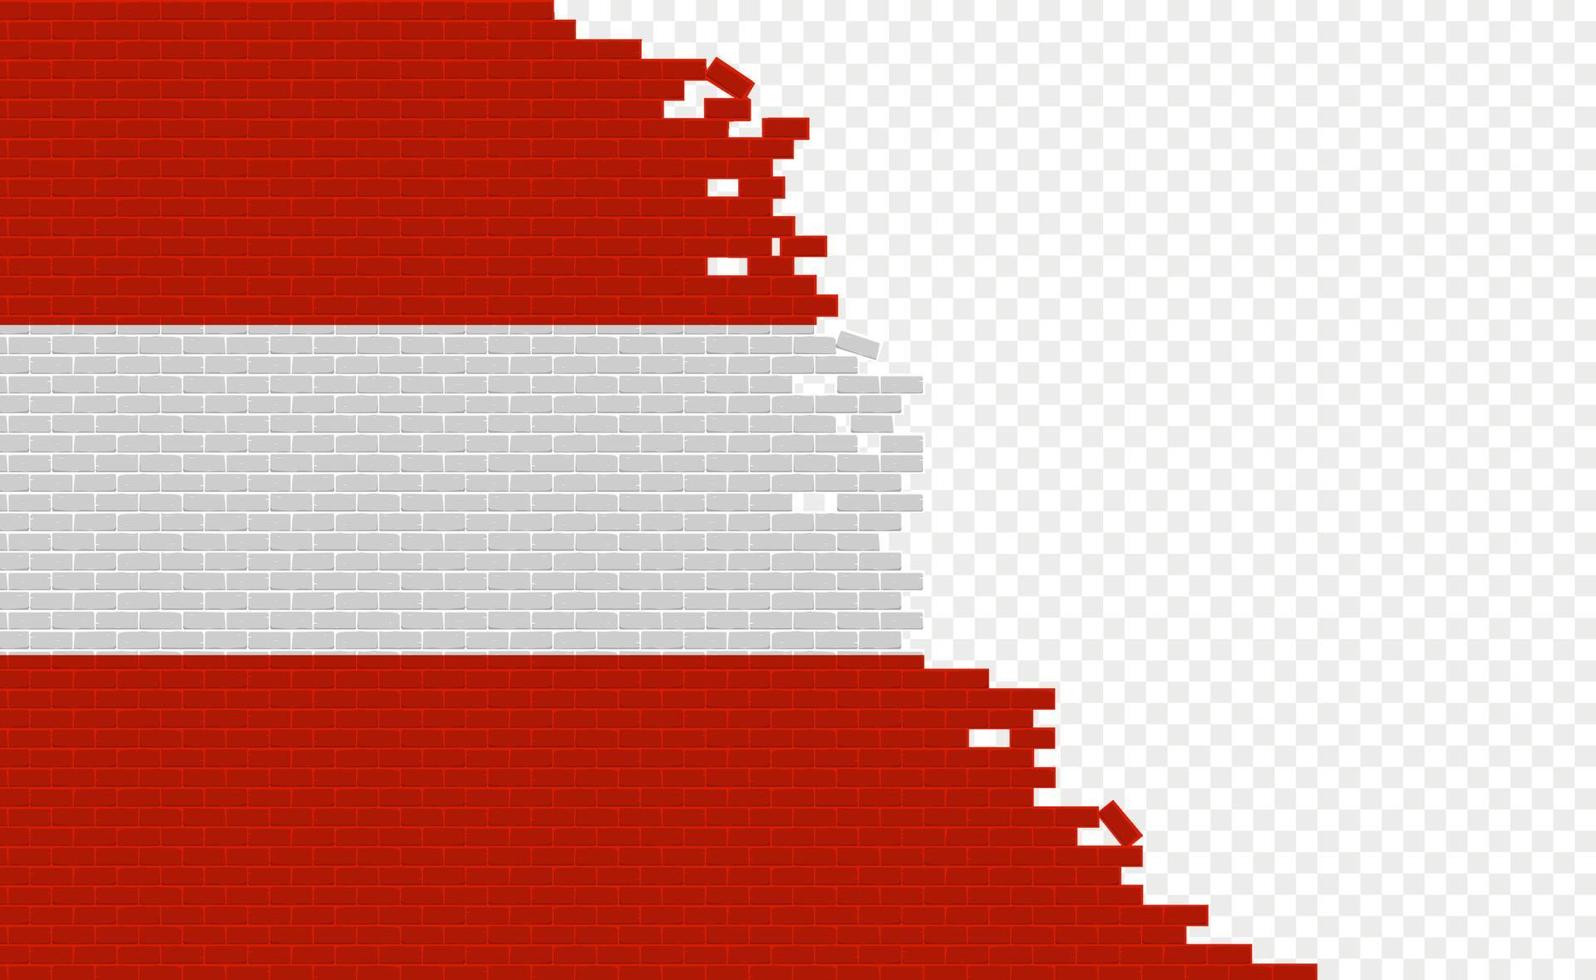 bandera de austria en la pared de ladrillos rotos. campo de bandera vacío de otro país. comparación de países. fácil edición y vector en grupos.